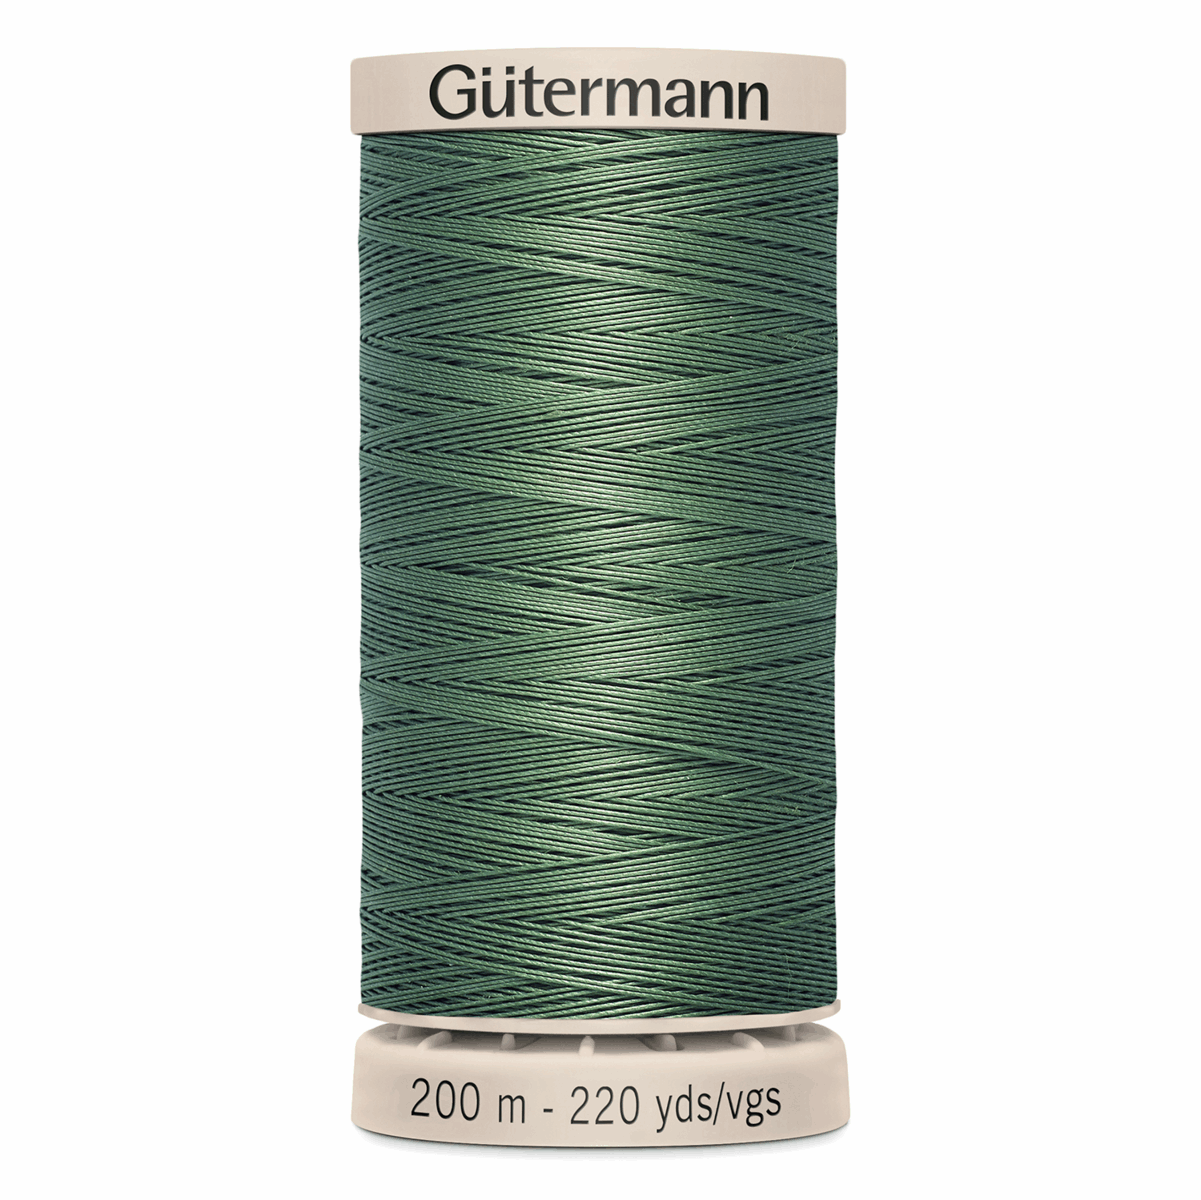 Gutermann Quilting Thread 200m - Colour 8724